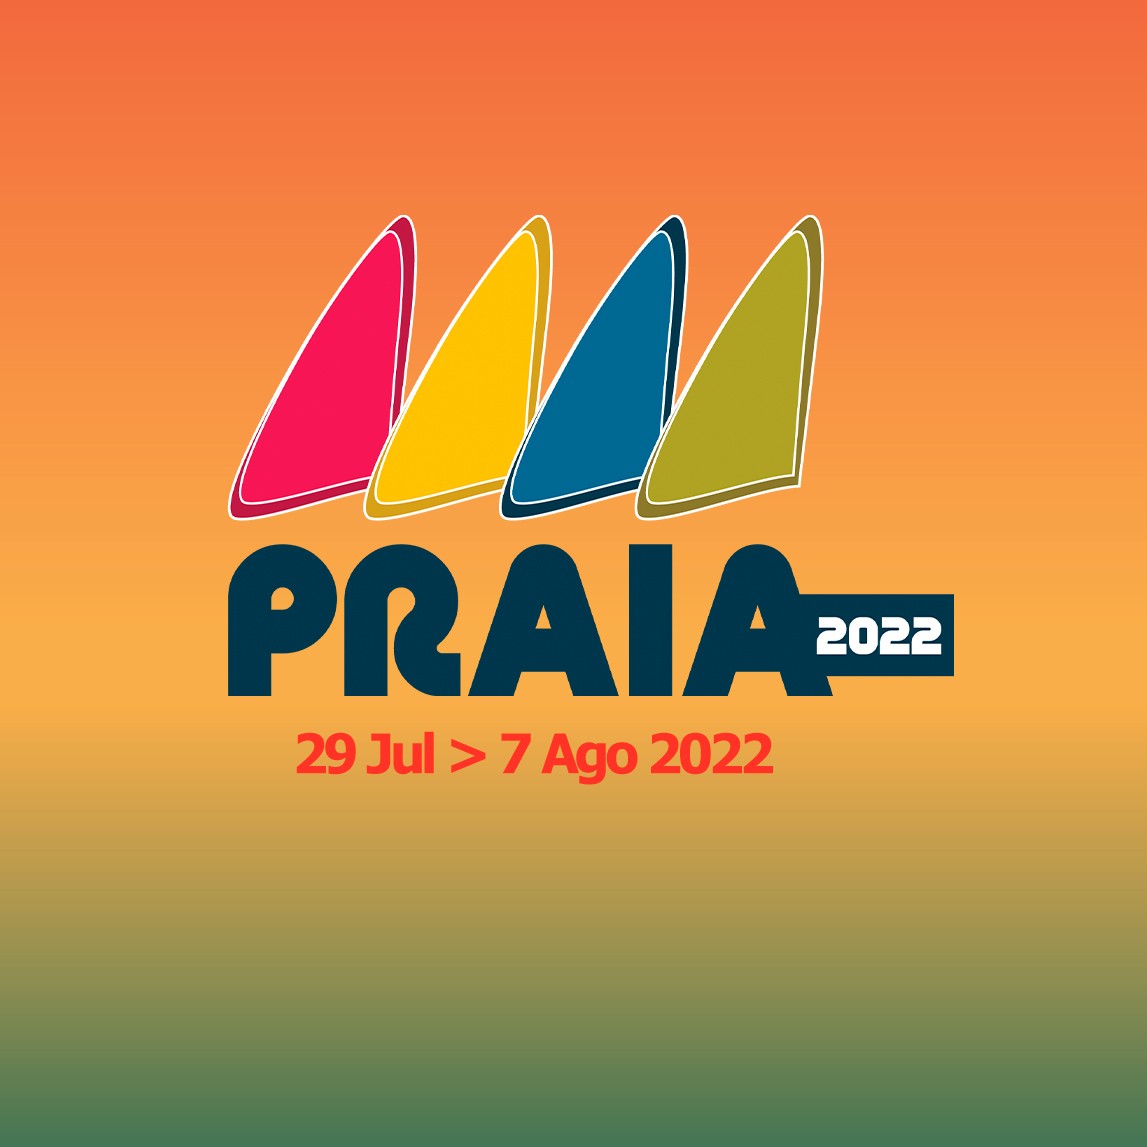 Festas da Praia 2022